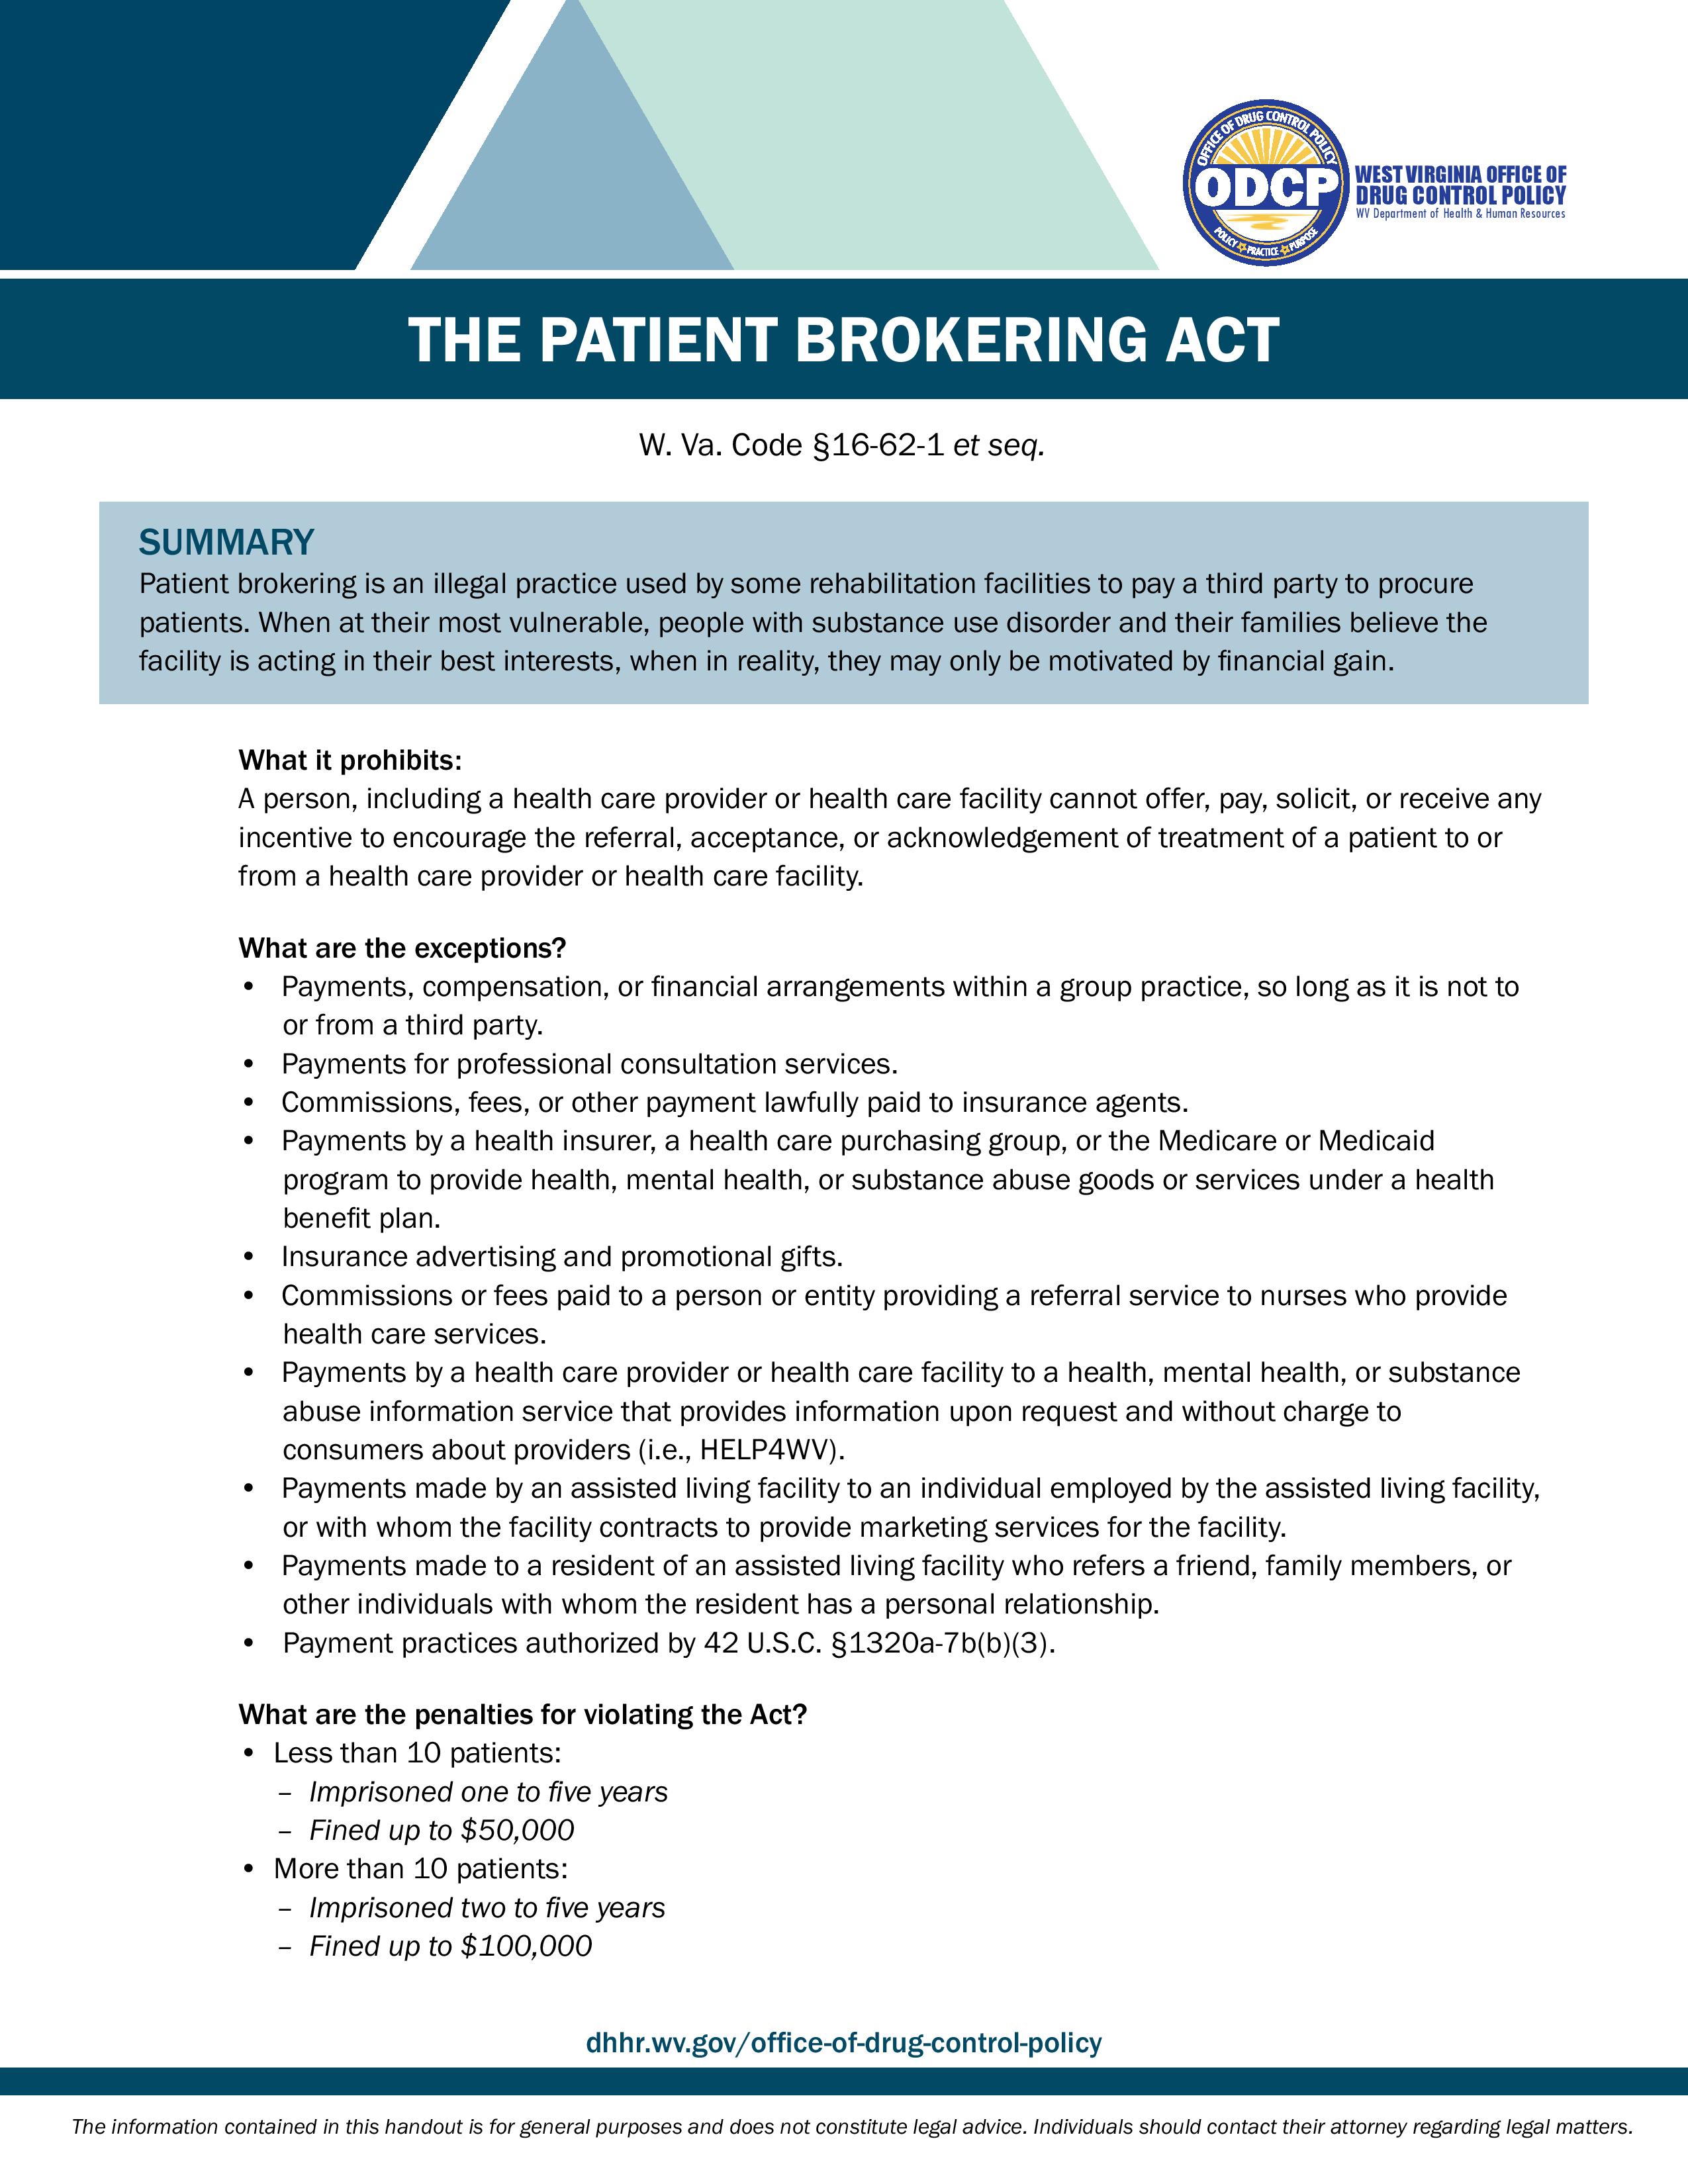 Patient Brokering Act Handout Final-page-001.jpg